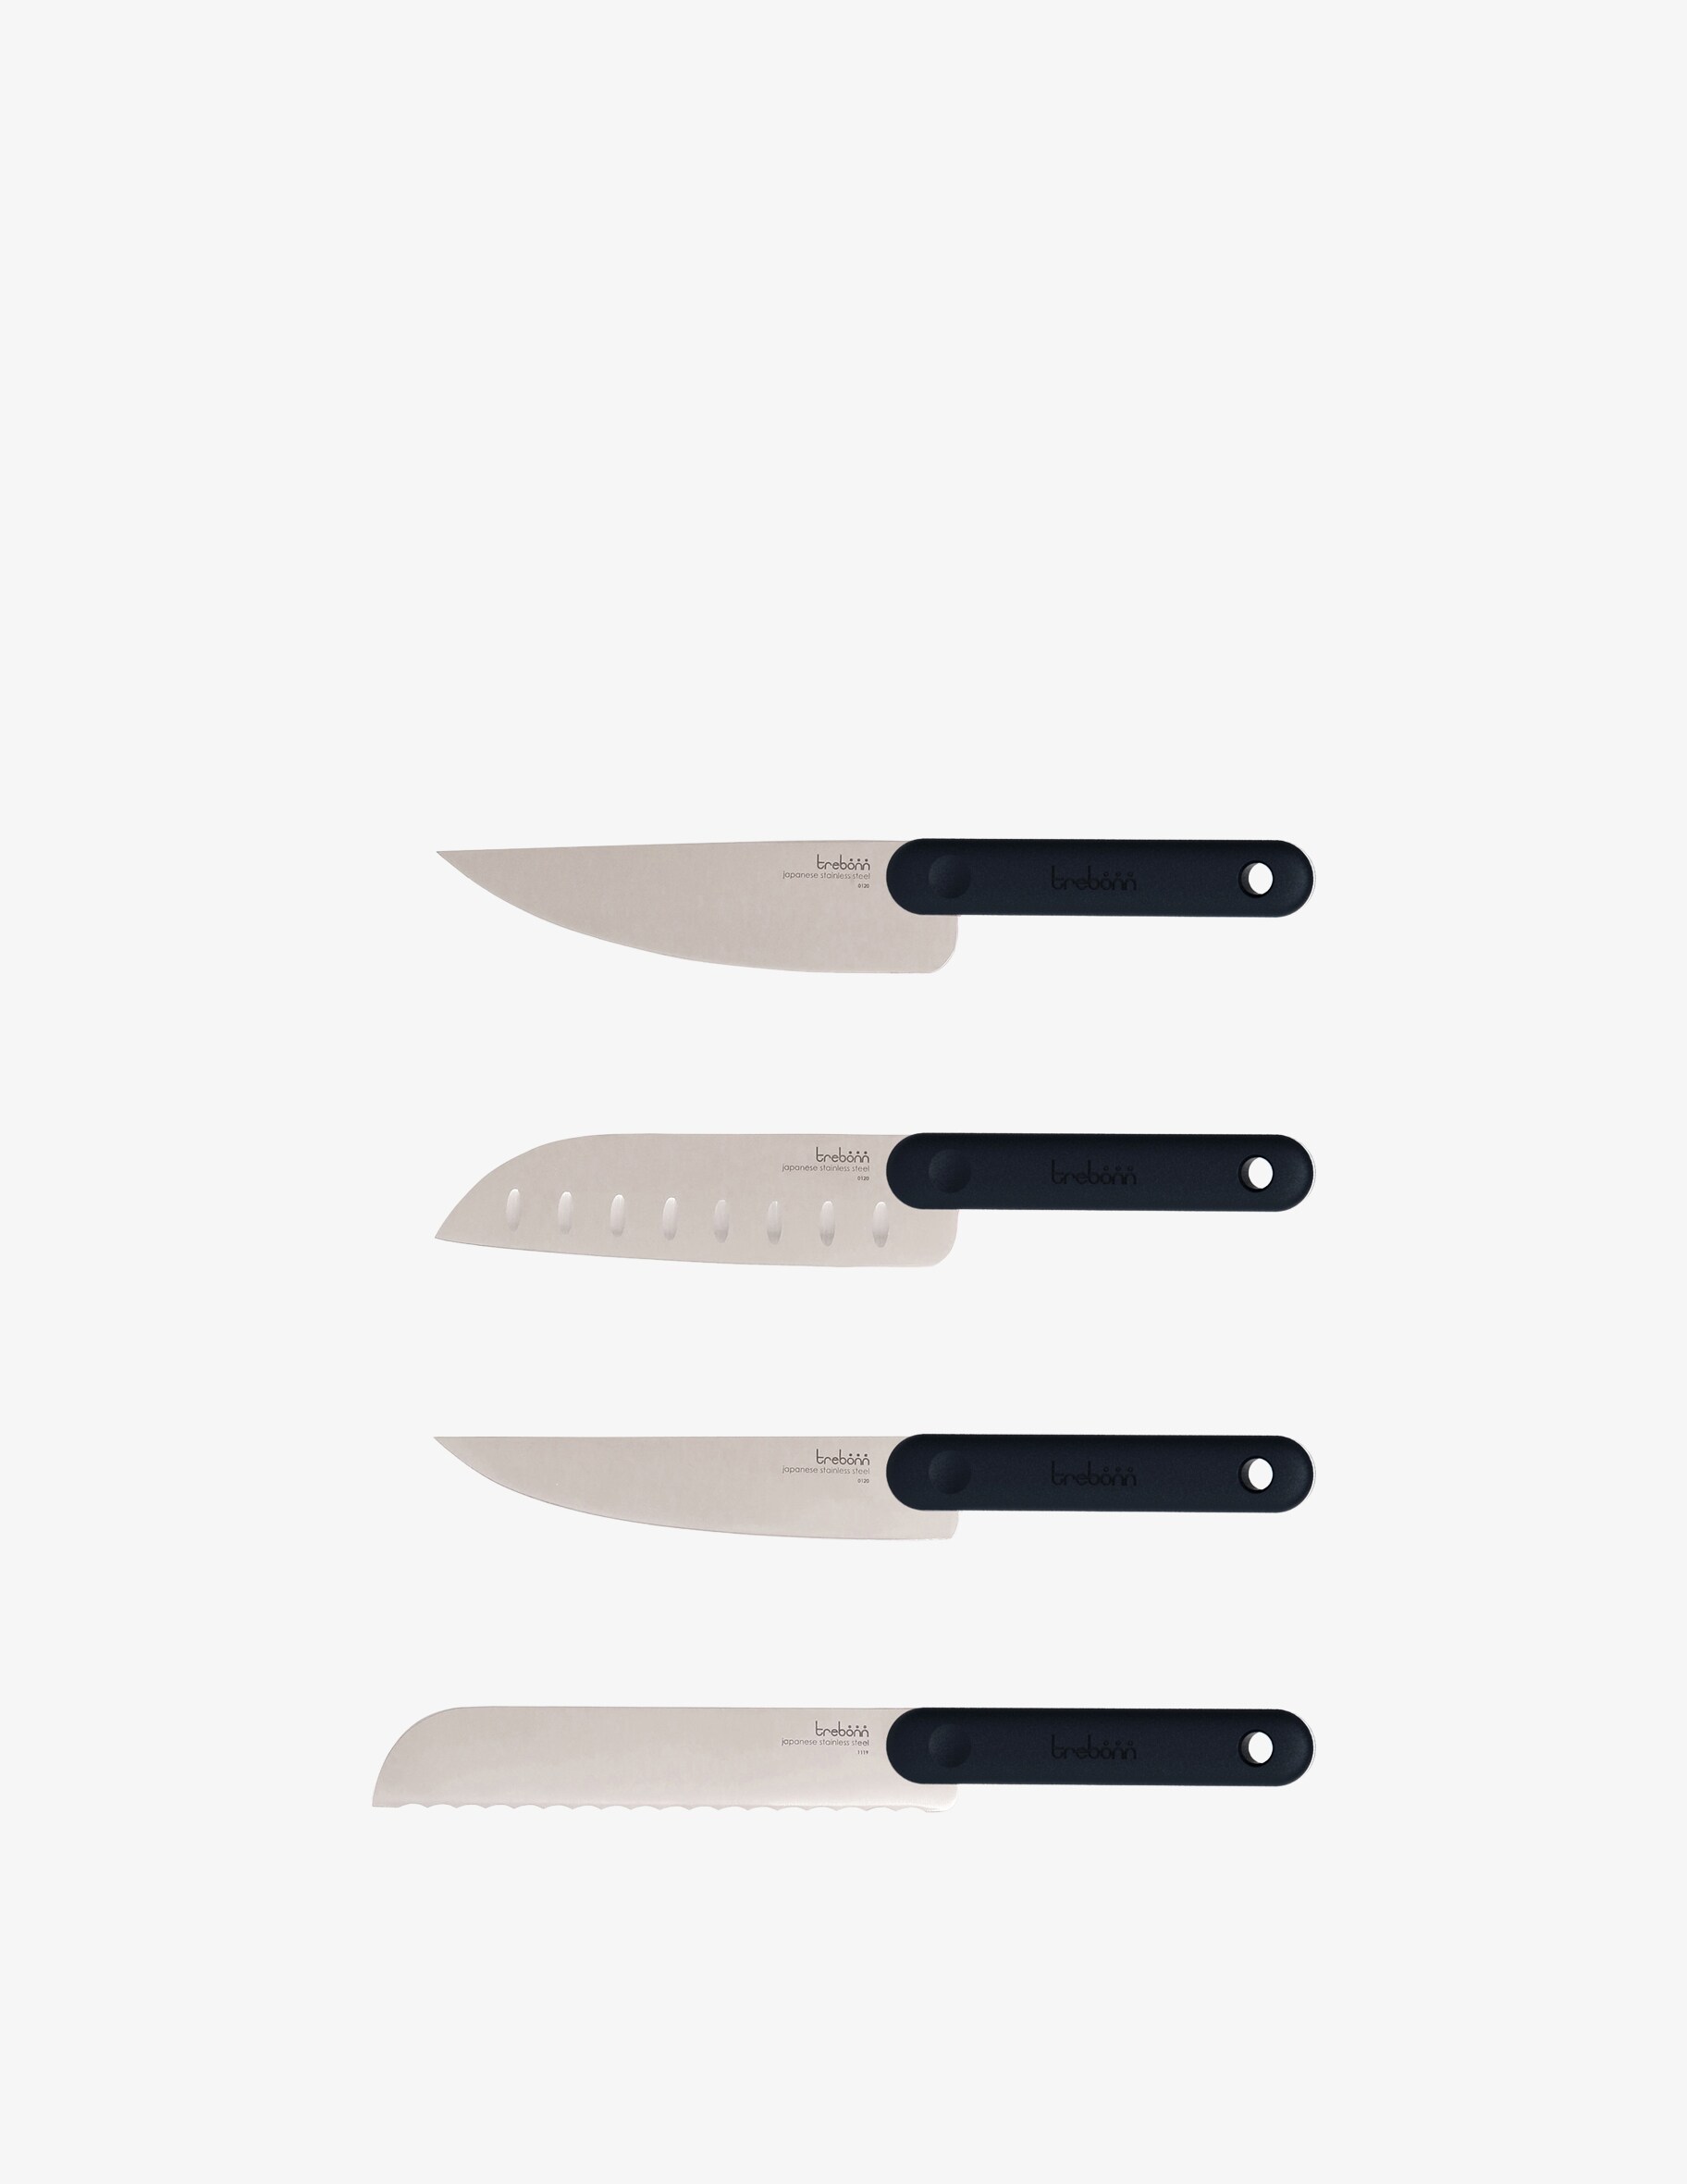 Набор ножей — набор из четырех японских ножей Black Edition Trebonn набор ножей darom 8030